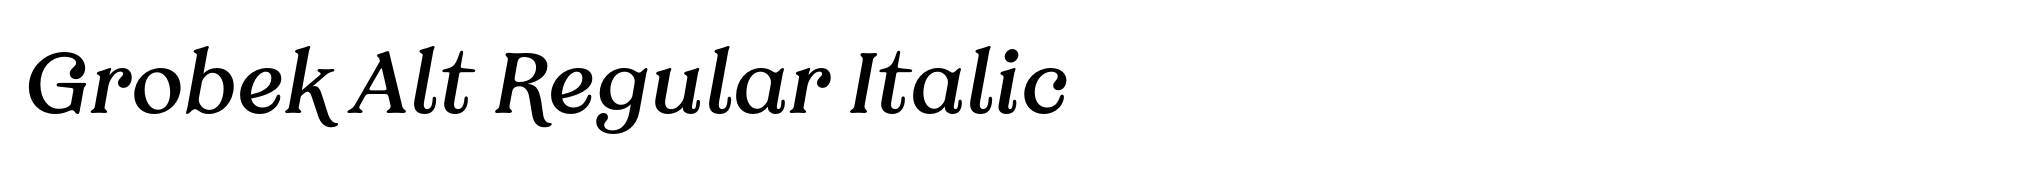 Grobek Alt Regular Italic image